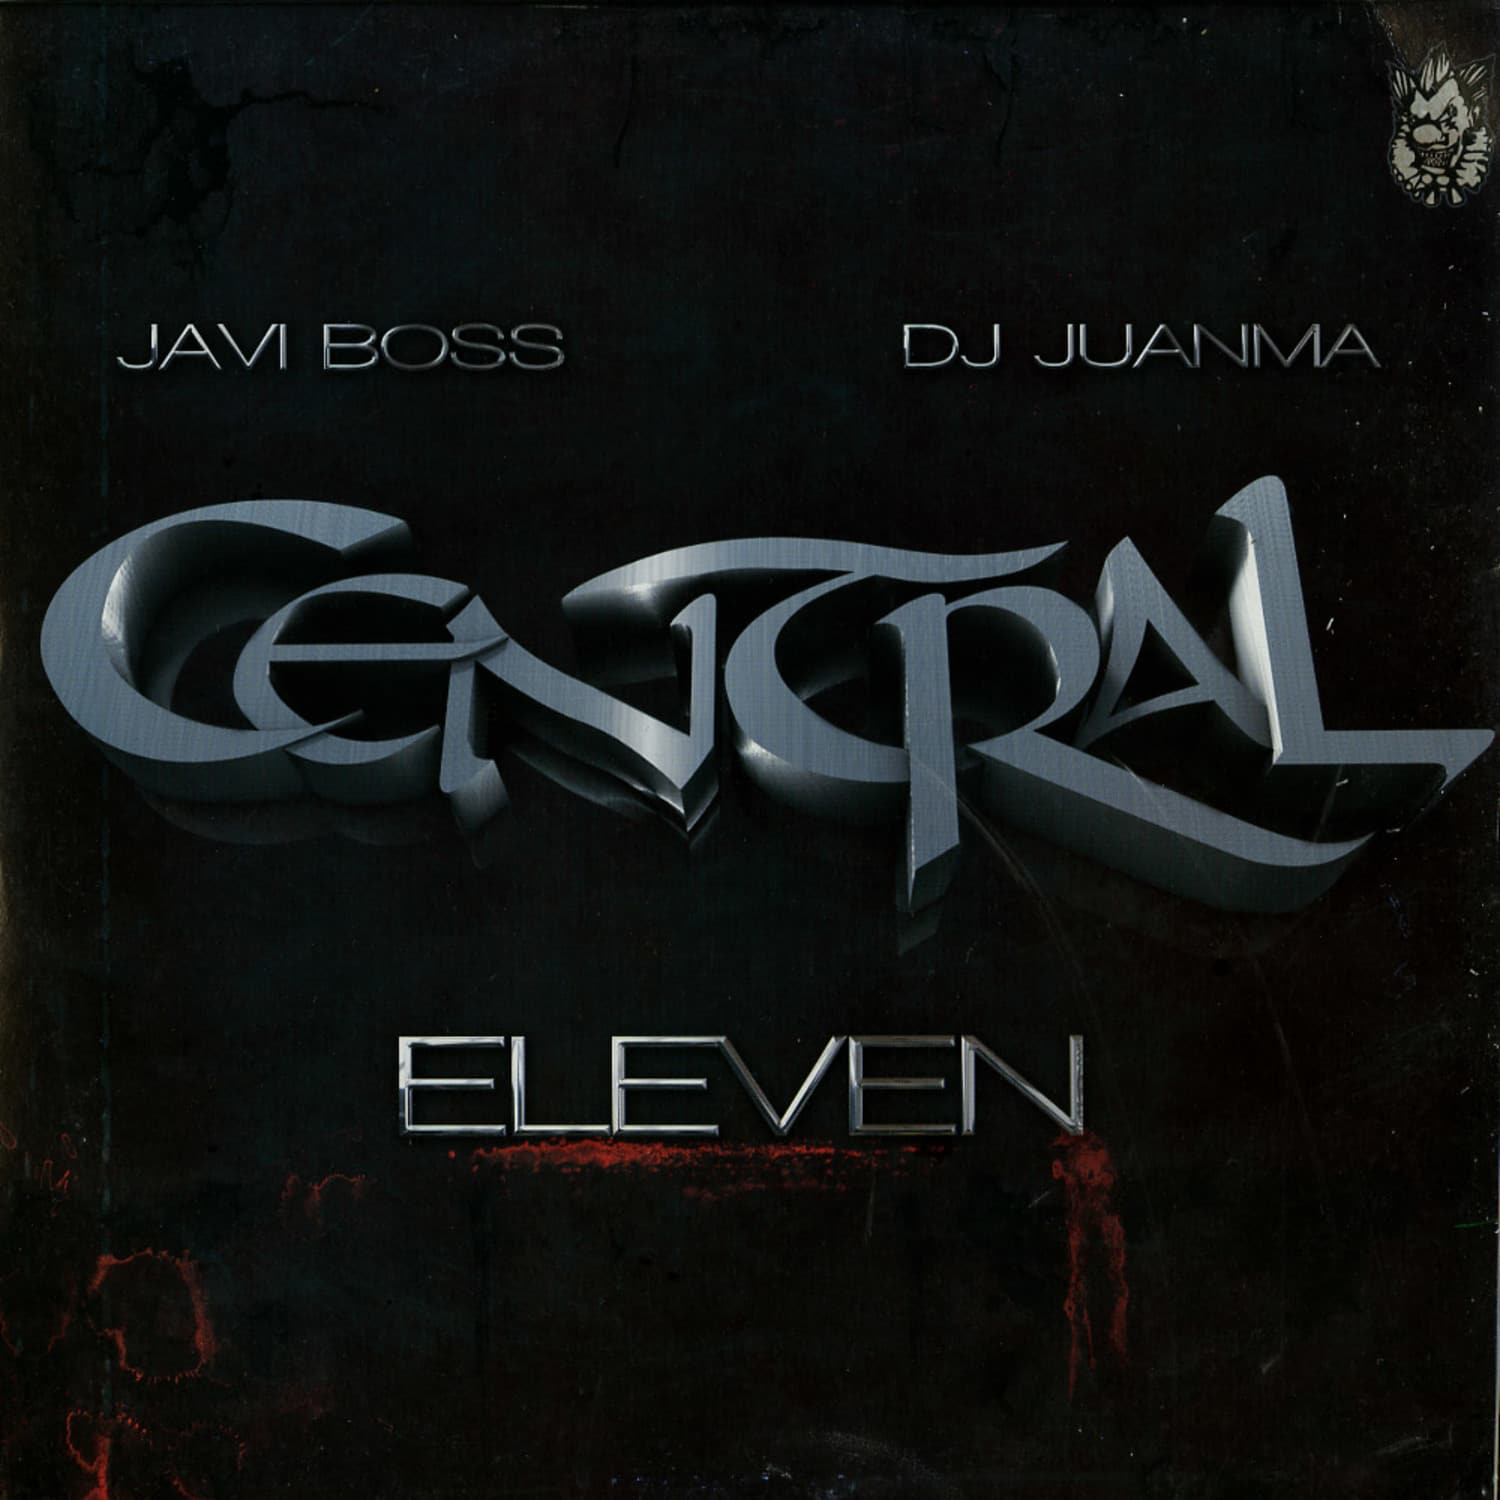 Javi Boss vs DJ Juanma - CENTRAL ELEVEN